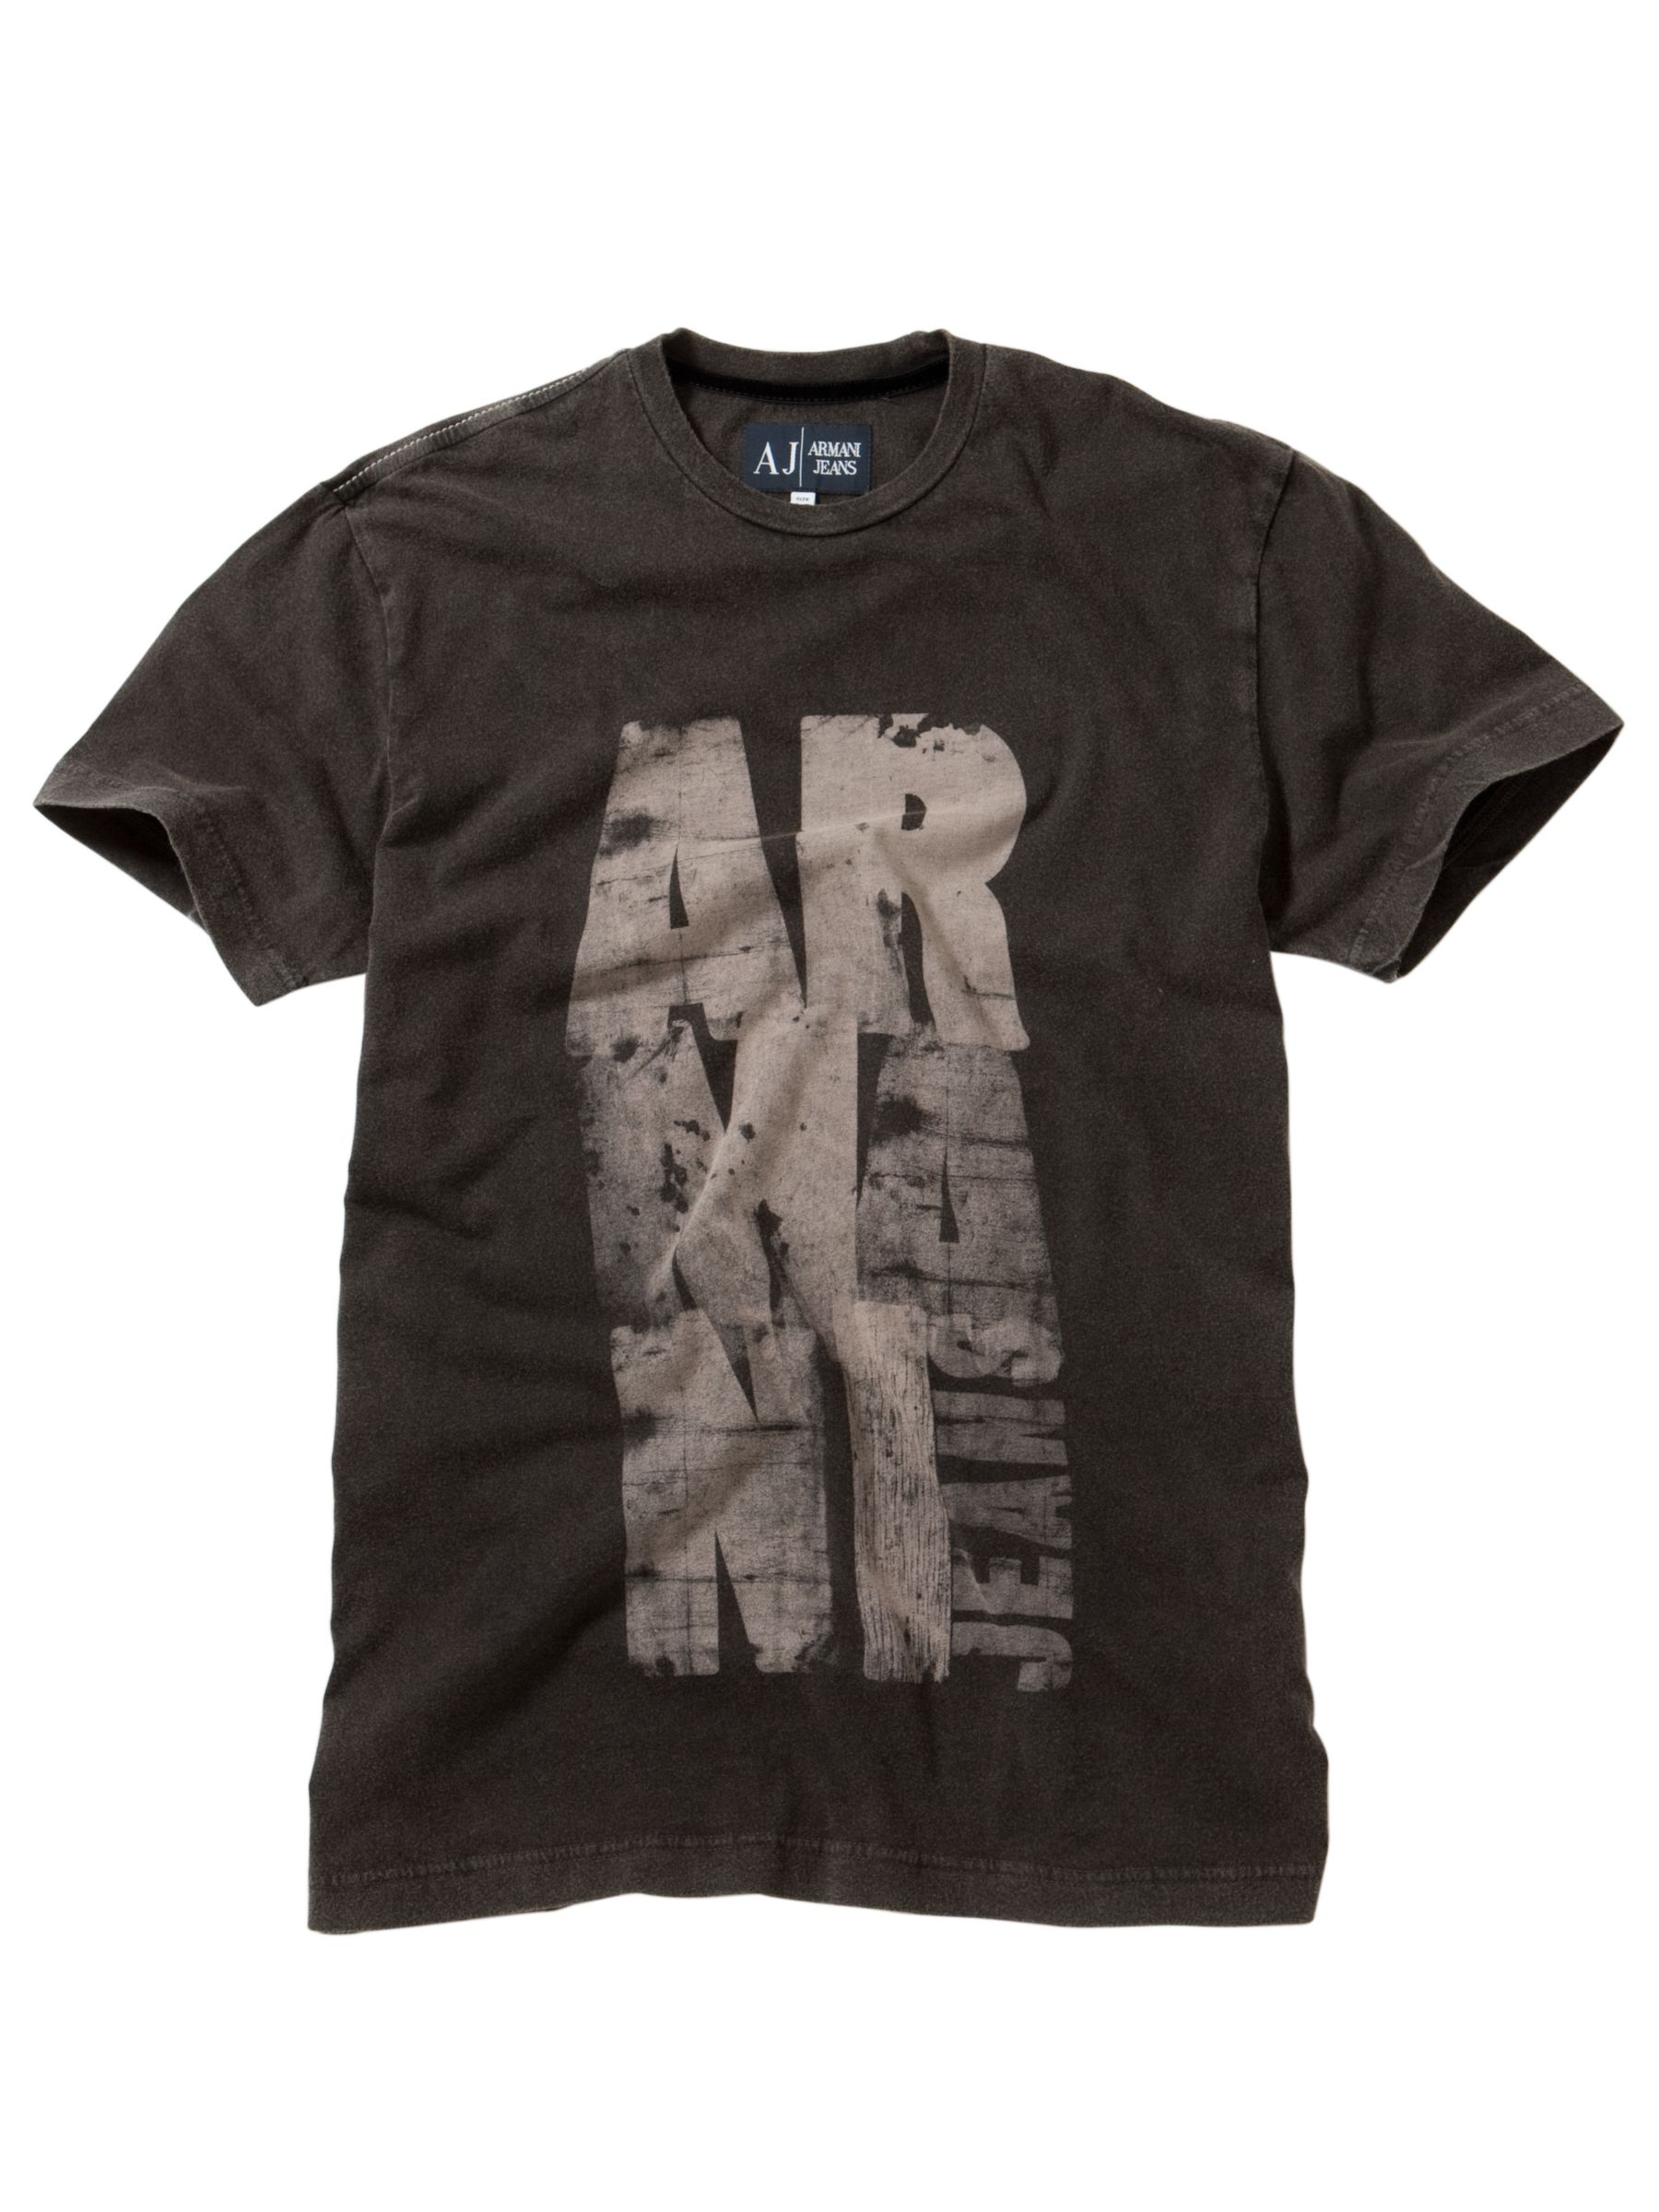 Armani Jeans Large Block Print Crew T-Shirt, Black